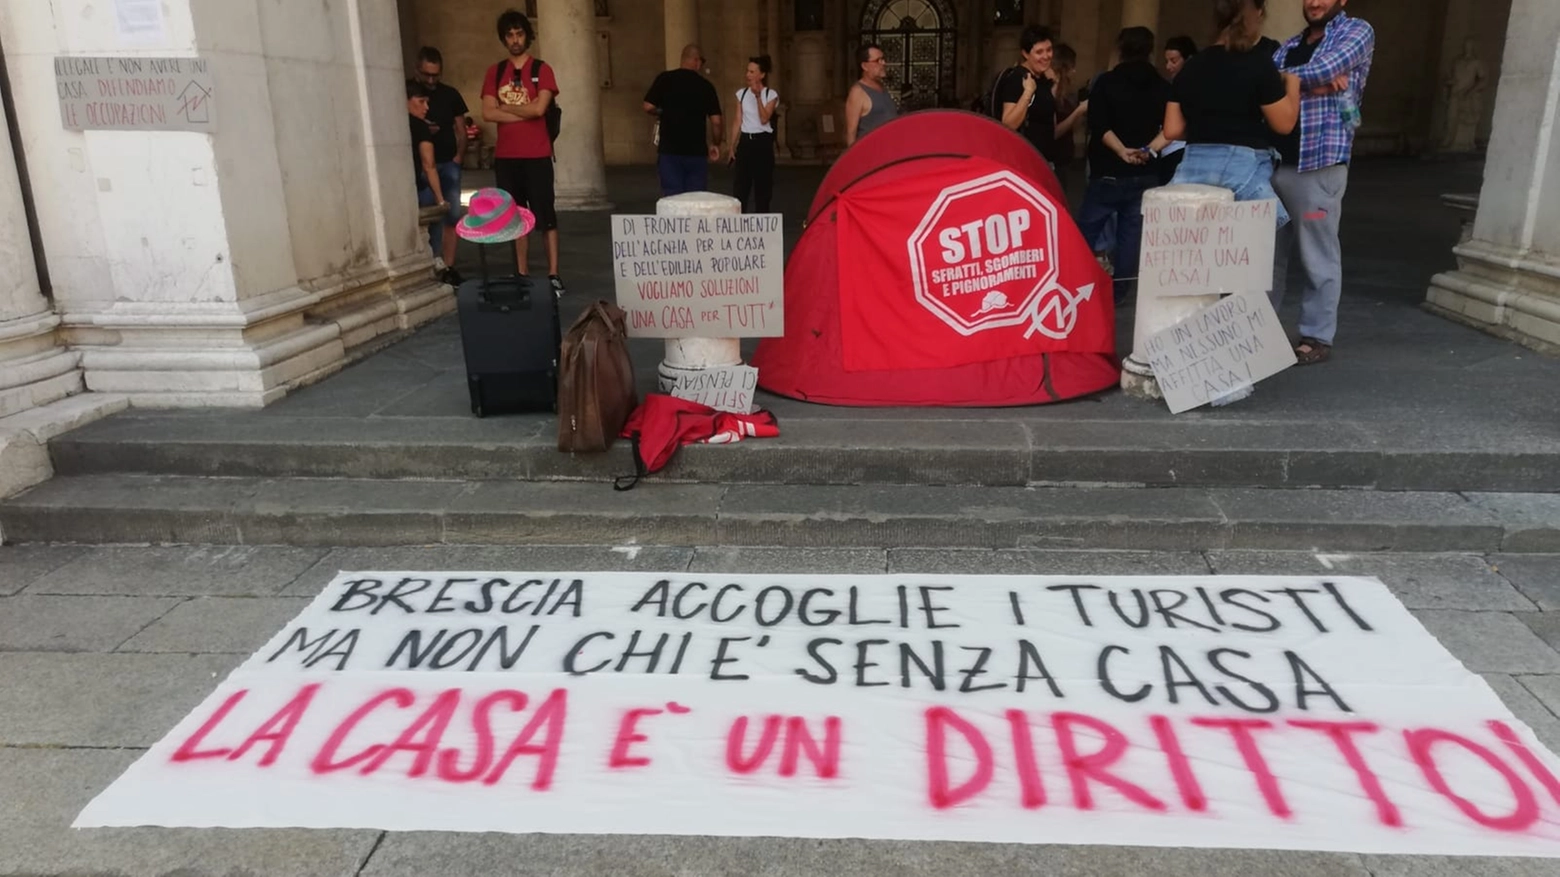 Anche a Brescia scoppia la protesta: sotto il palazzo del Comune è stata piantata una tenda. I manifestanti: “Siamo in grado di pagare un affitto”. In serata l’intervento dell’Amministrazione